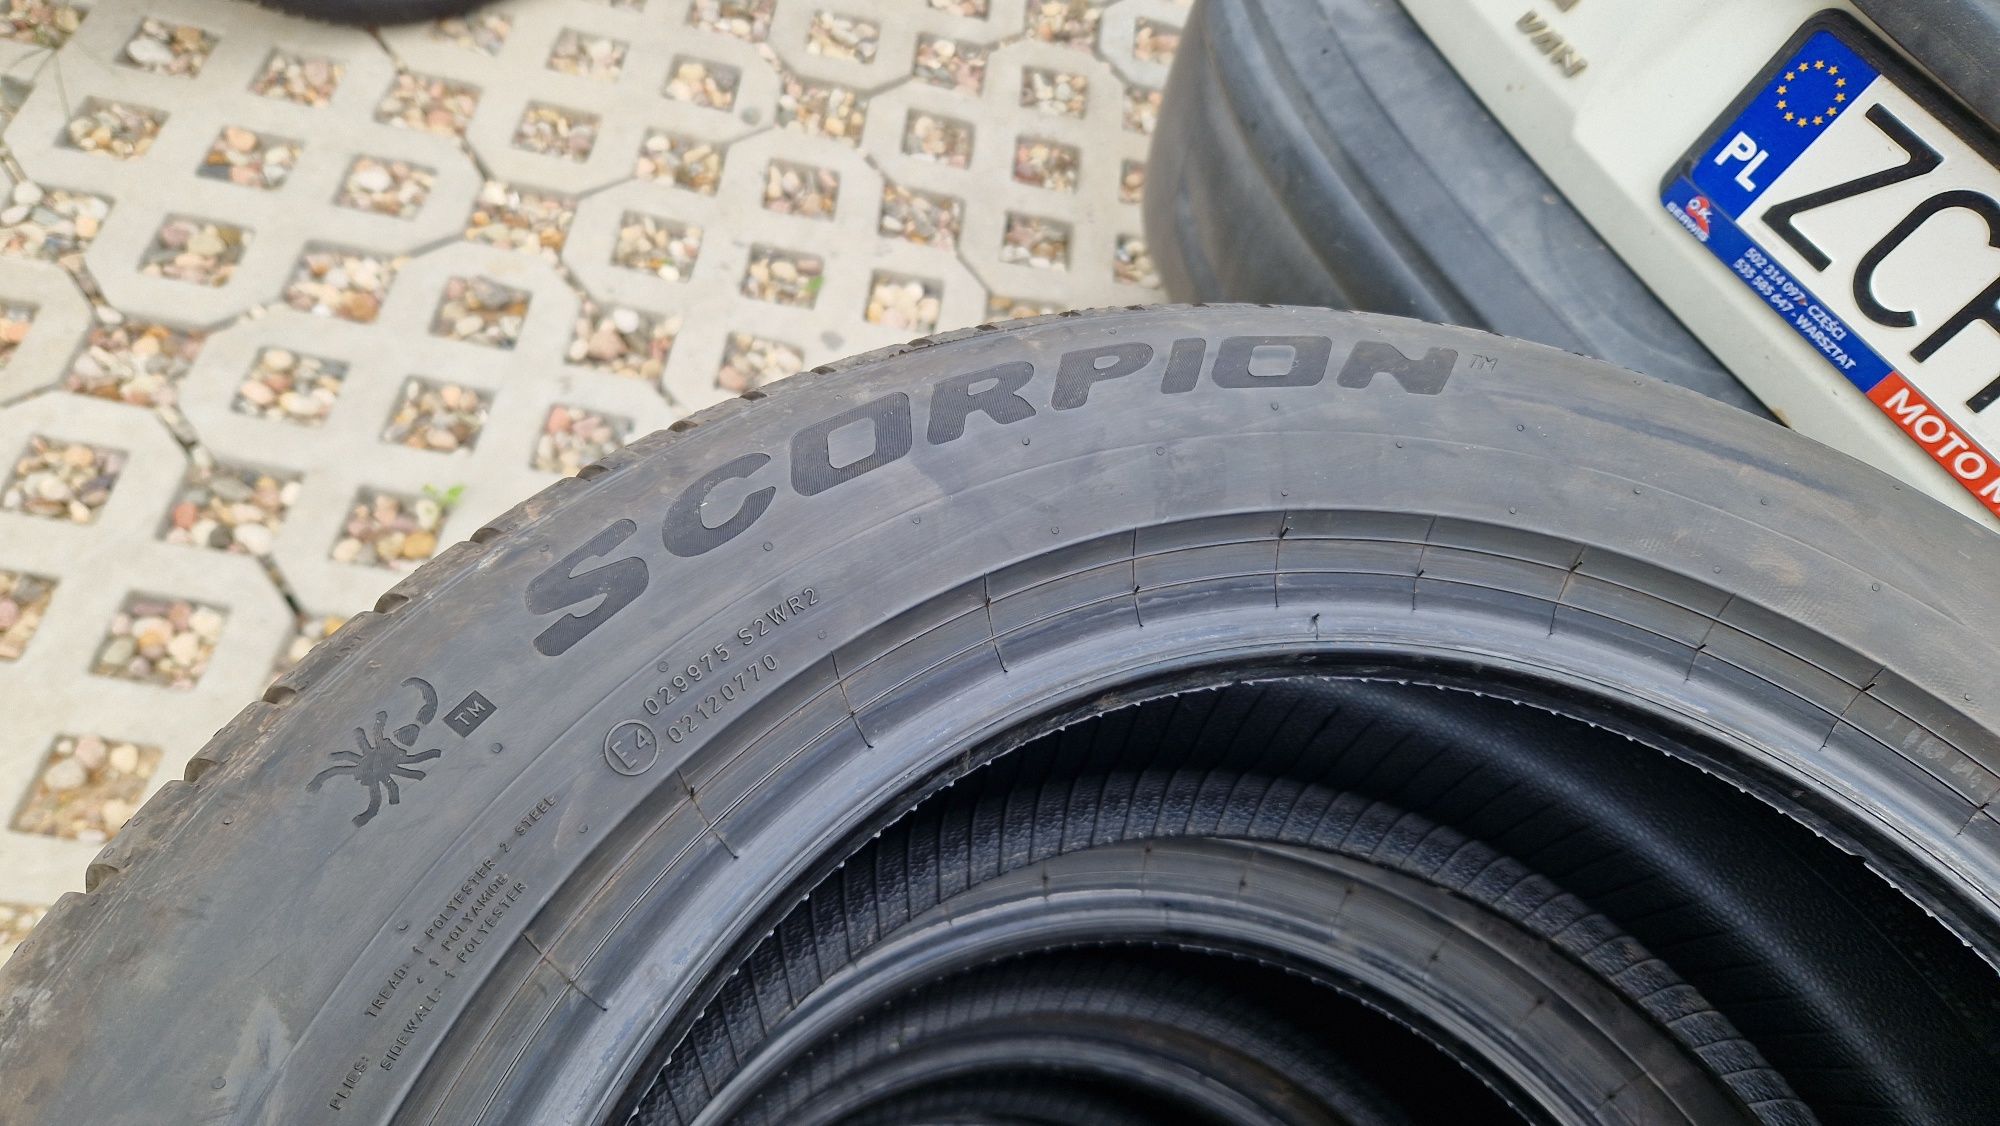 Opony Pirelli Scorpion 225/55/18 letnie, jak nowe.